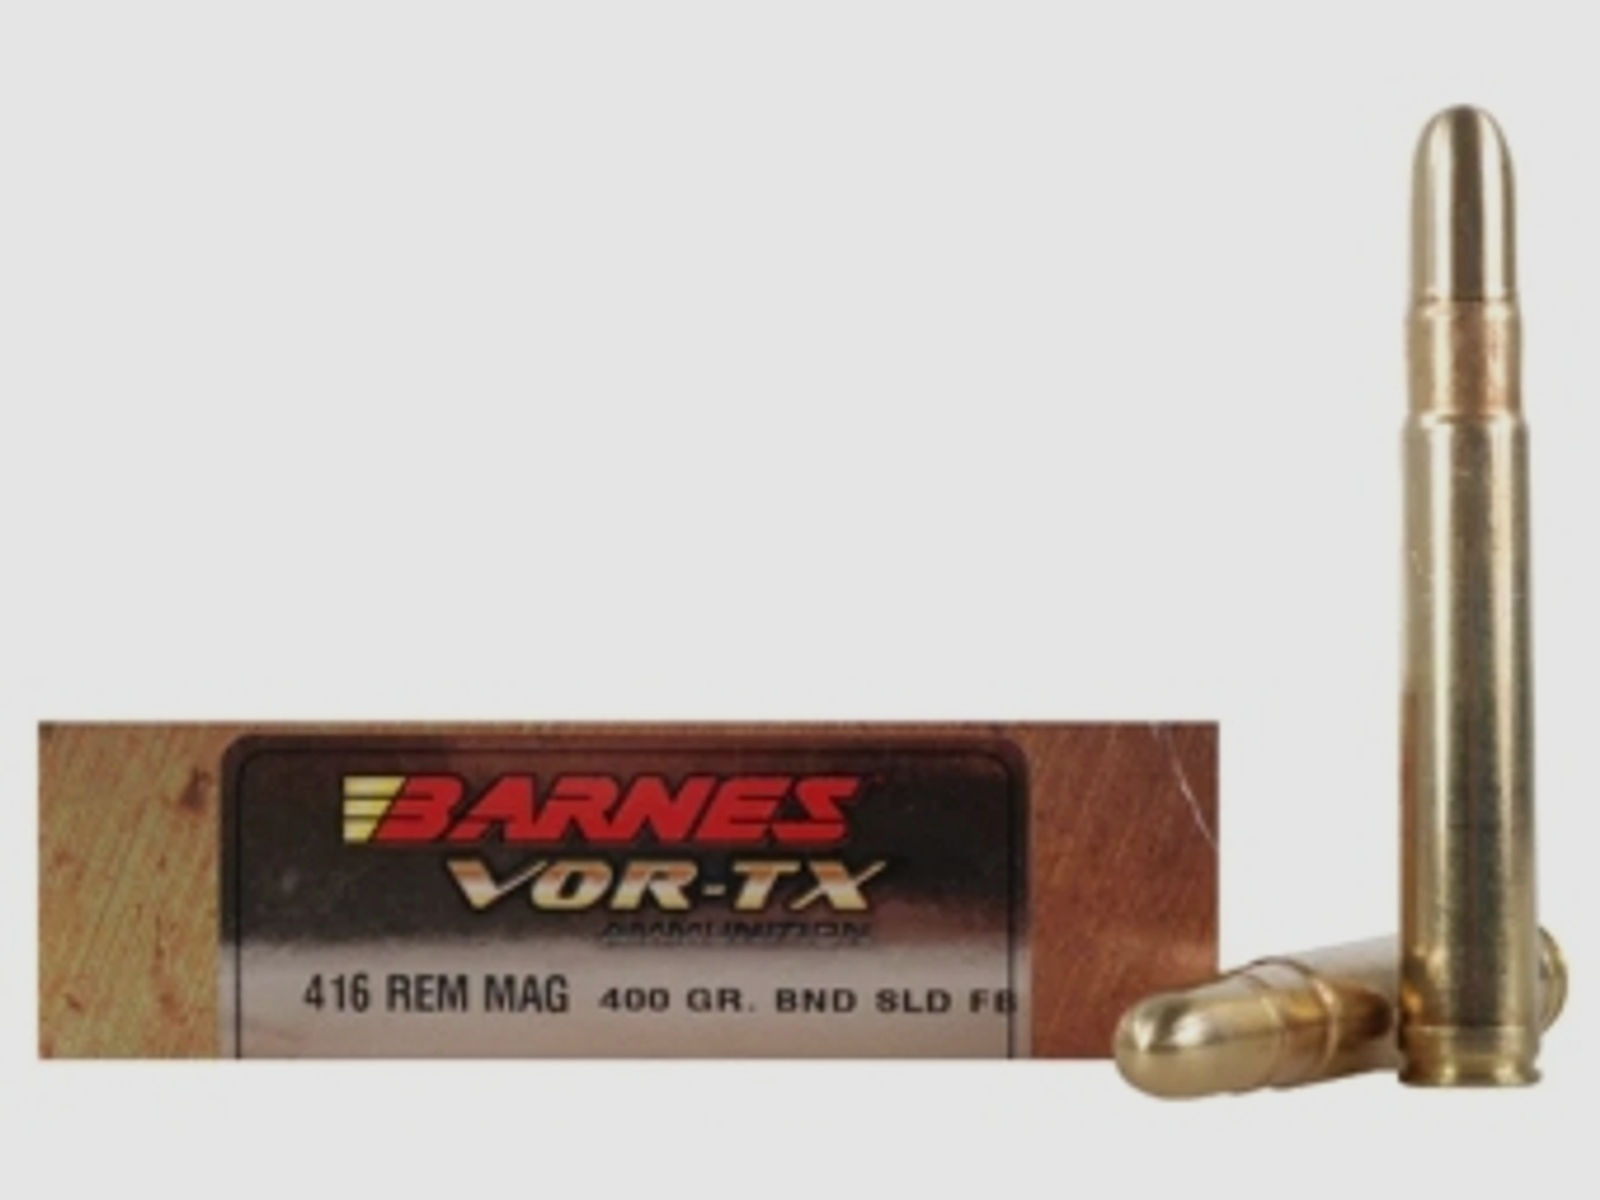 Barnes VOR-TX Safari .416 Rem. Mag. 400GR Banded Solid Round Nose 20 Patronen